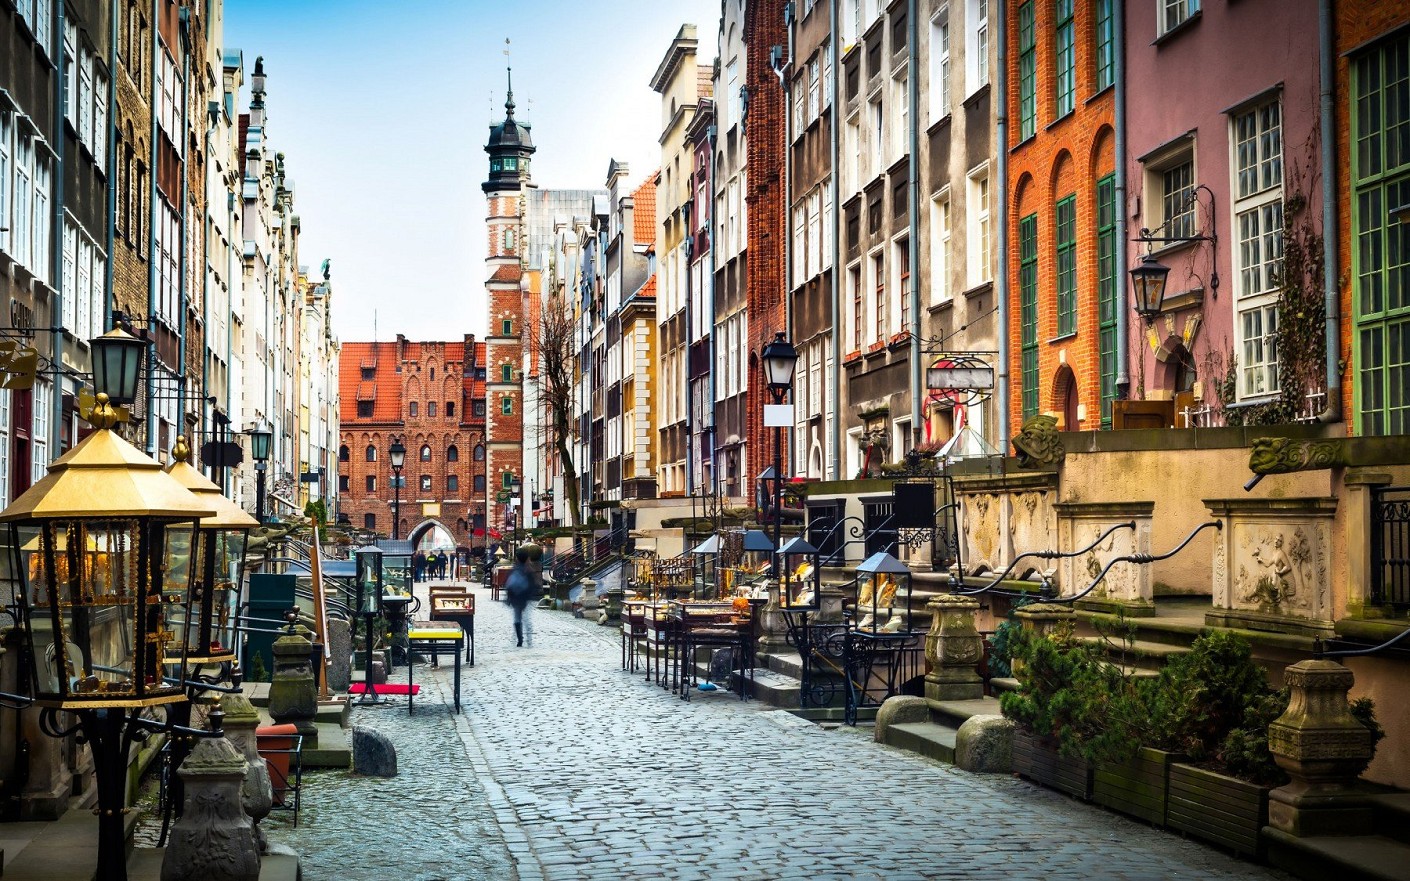 Ką verta žinoti prieš vykstant į Gdanską?